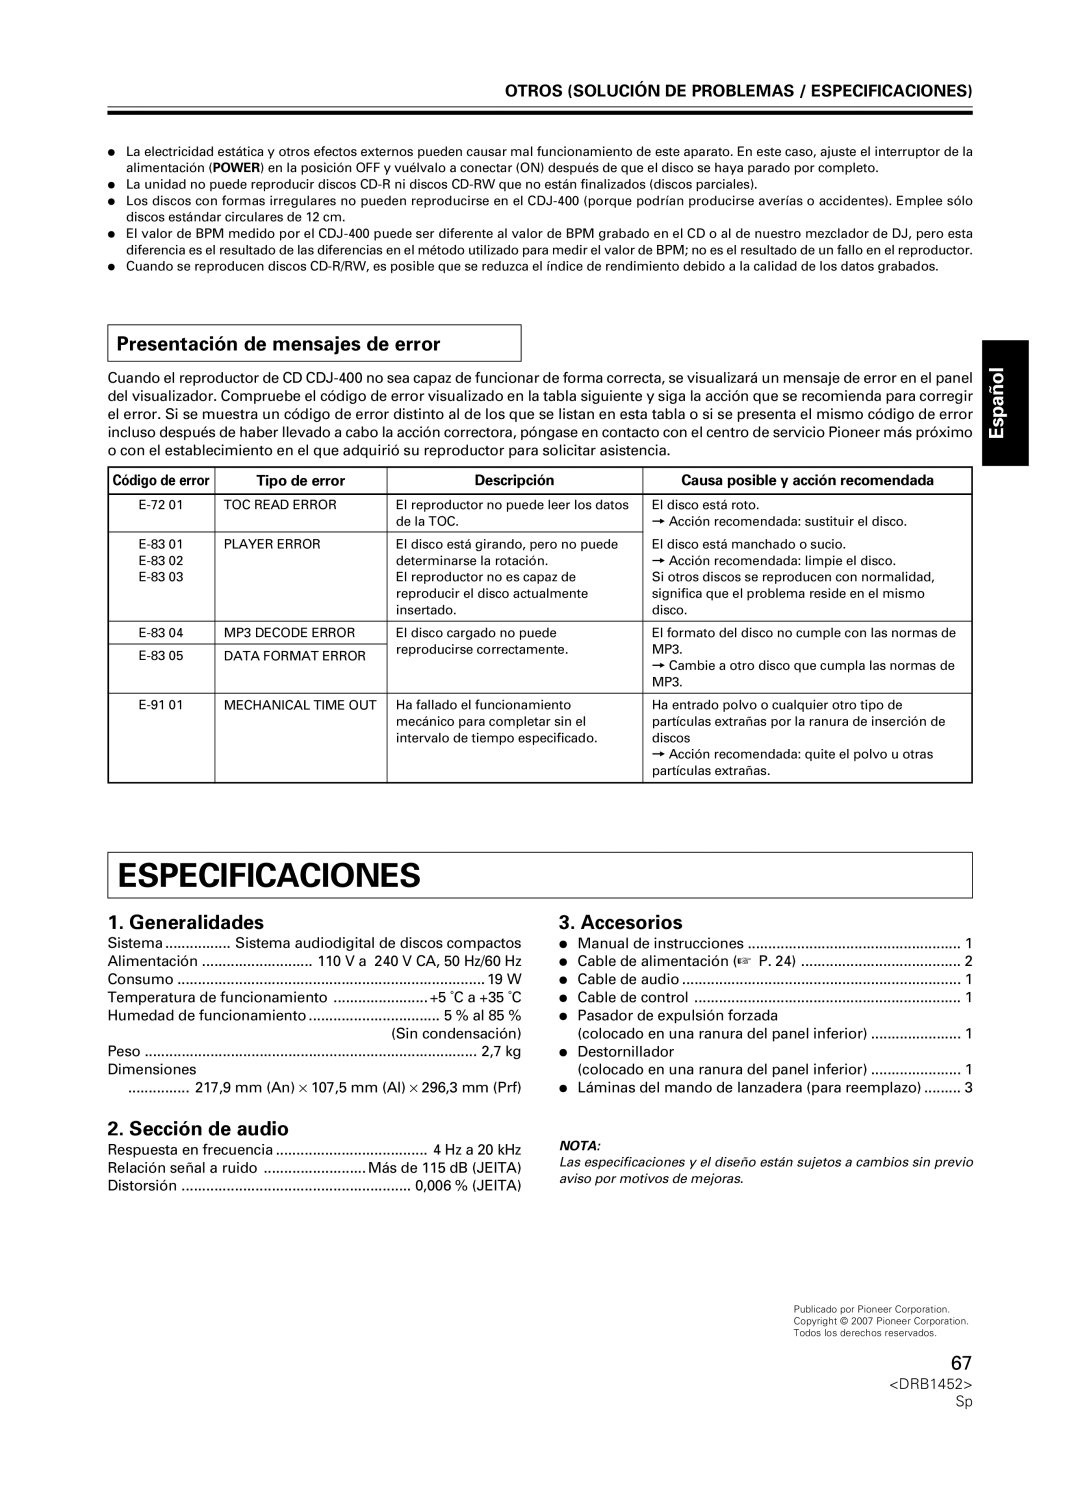 Pioneer CDJ-400 Especificaciones, Presentación de mensajes de error, Generalidades, Accesorios, Sección de audio, Español 